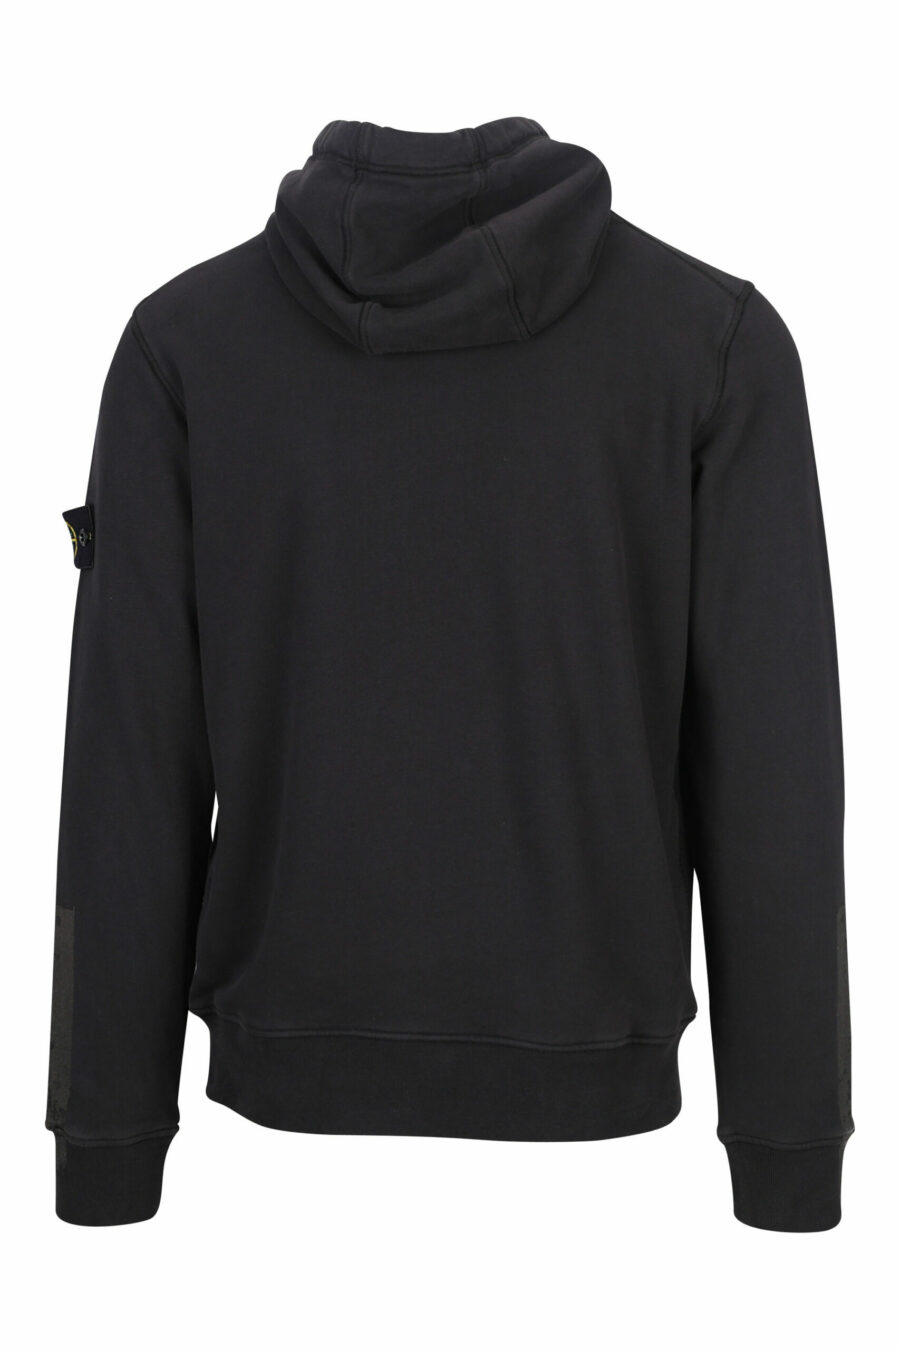 Schwarzes Kapuzensweatshirt mit seitlichem Logo - 8052572736230 2 skaliert